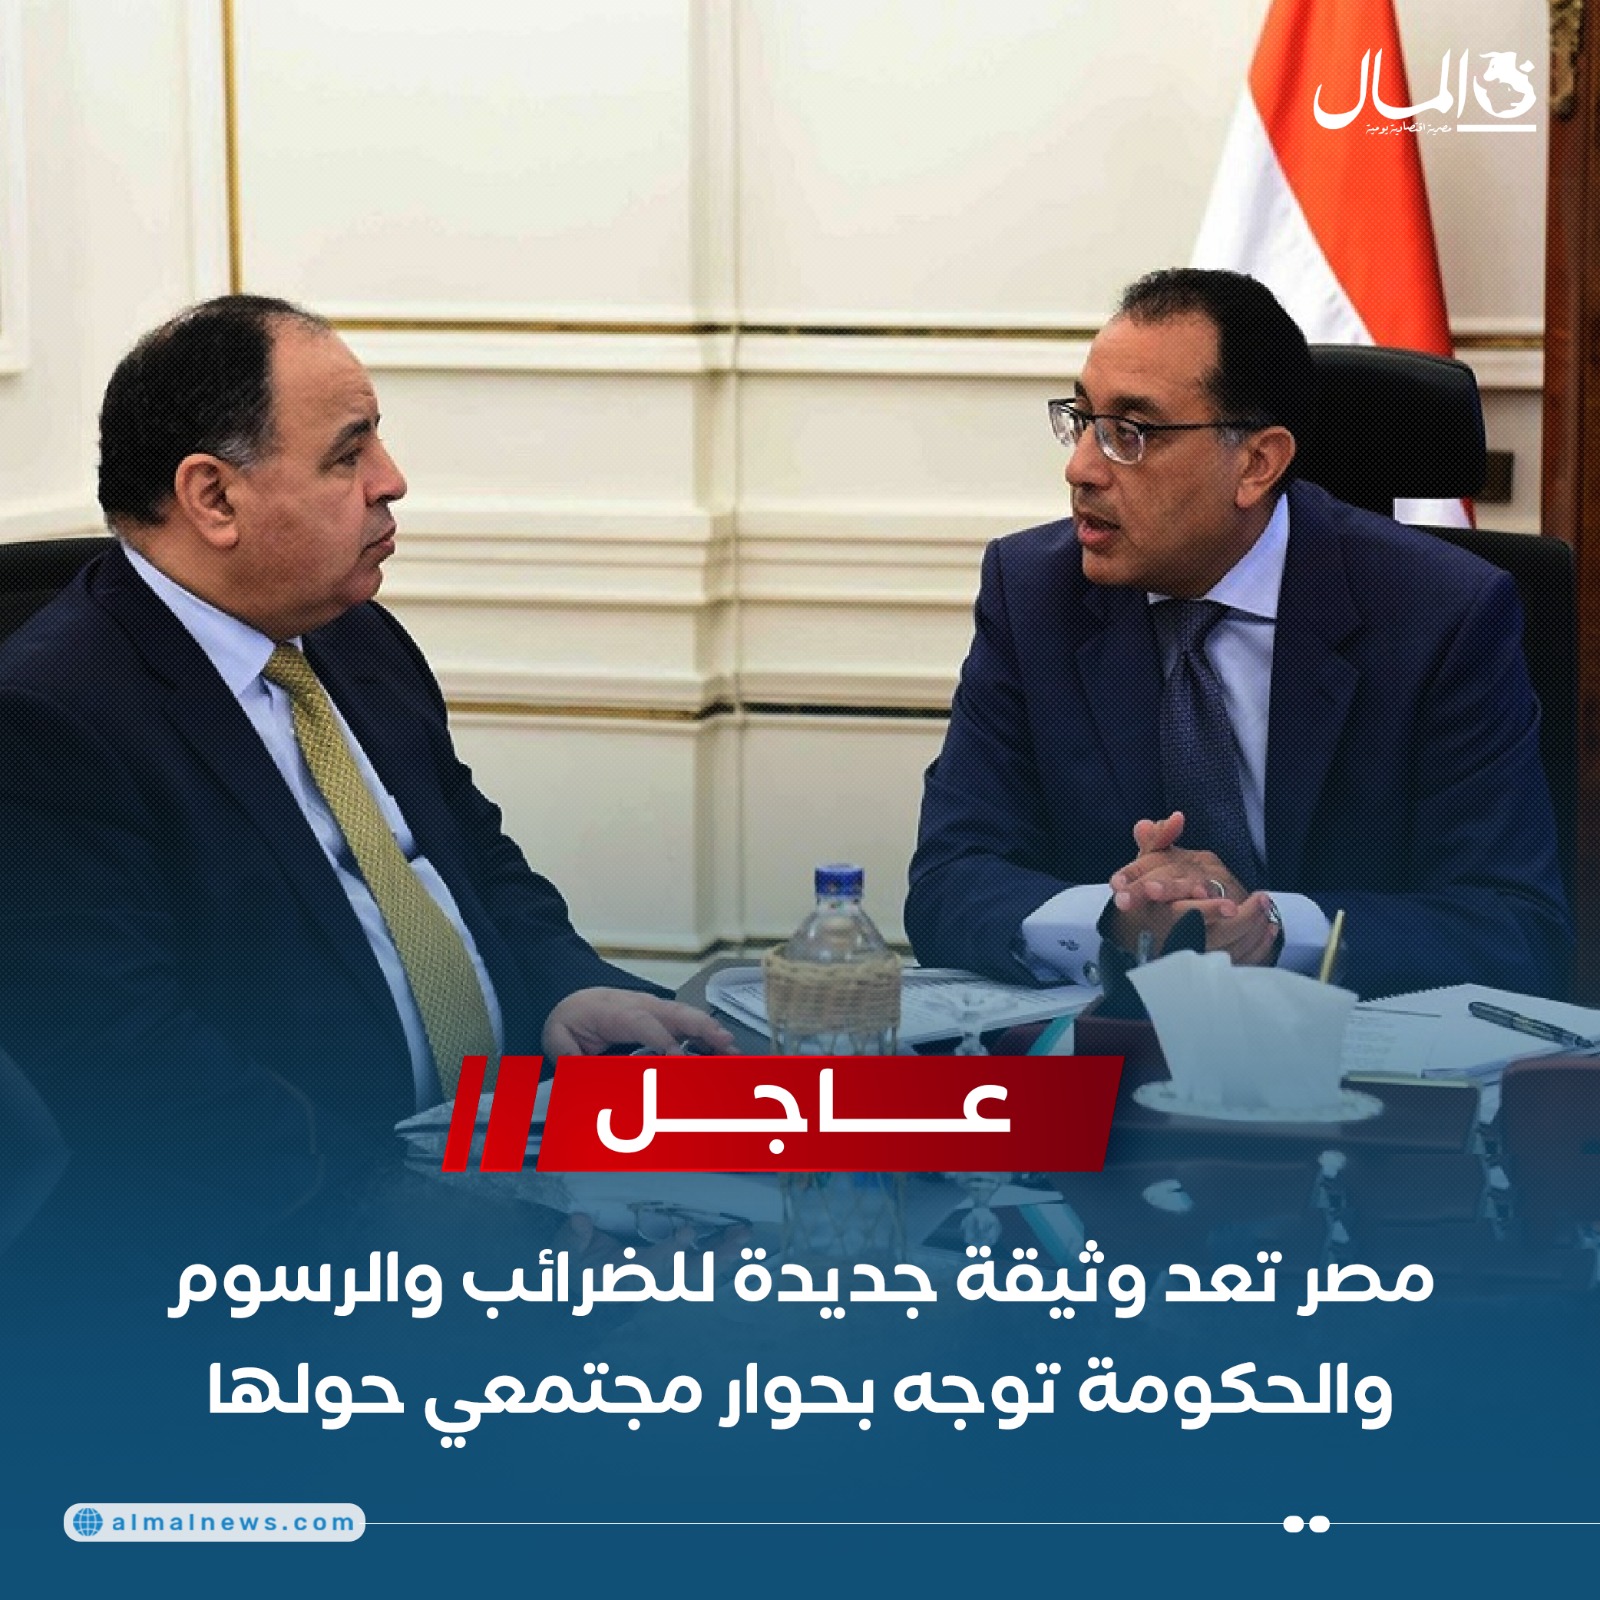 عاجل .. مصر تعد وثيقة جديدة للضرائب والرسوم والحكومة توجه بحوار مجتمعي حولها 